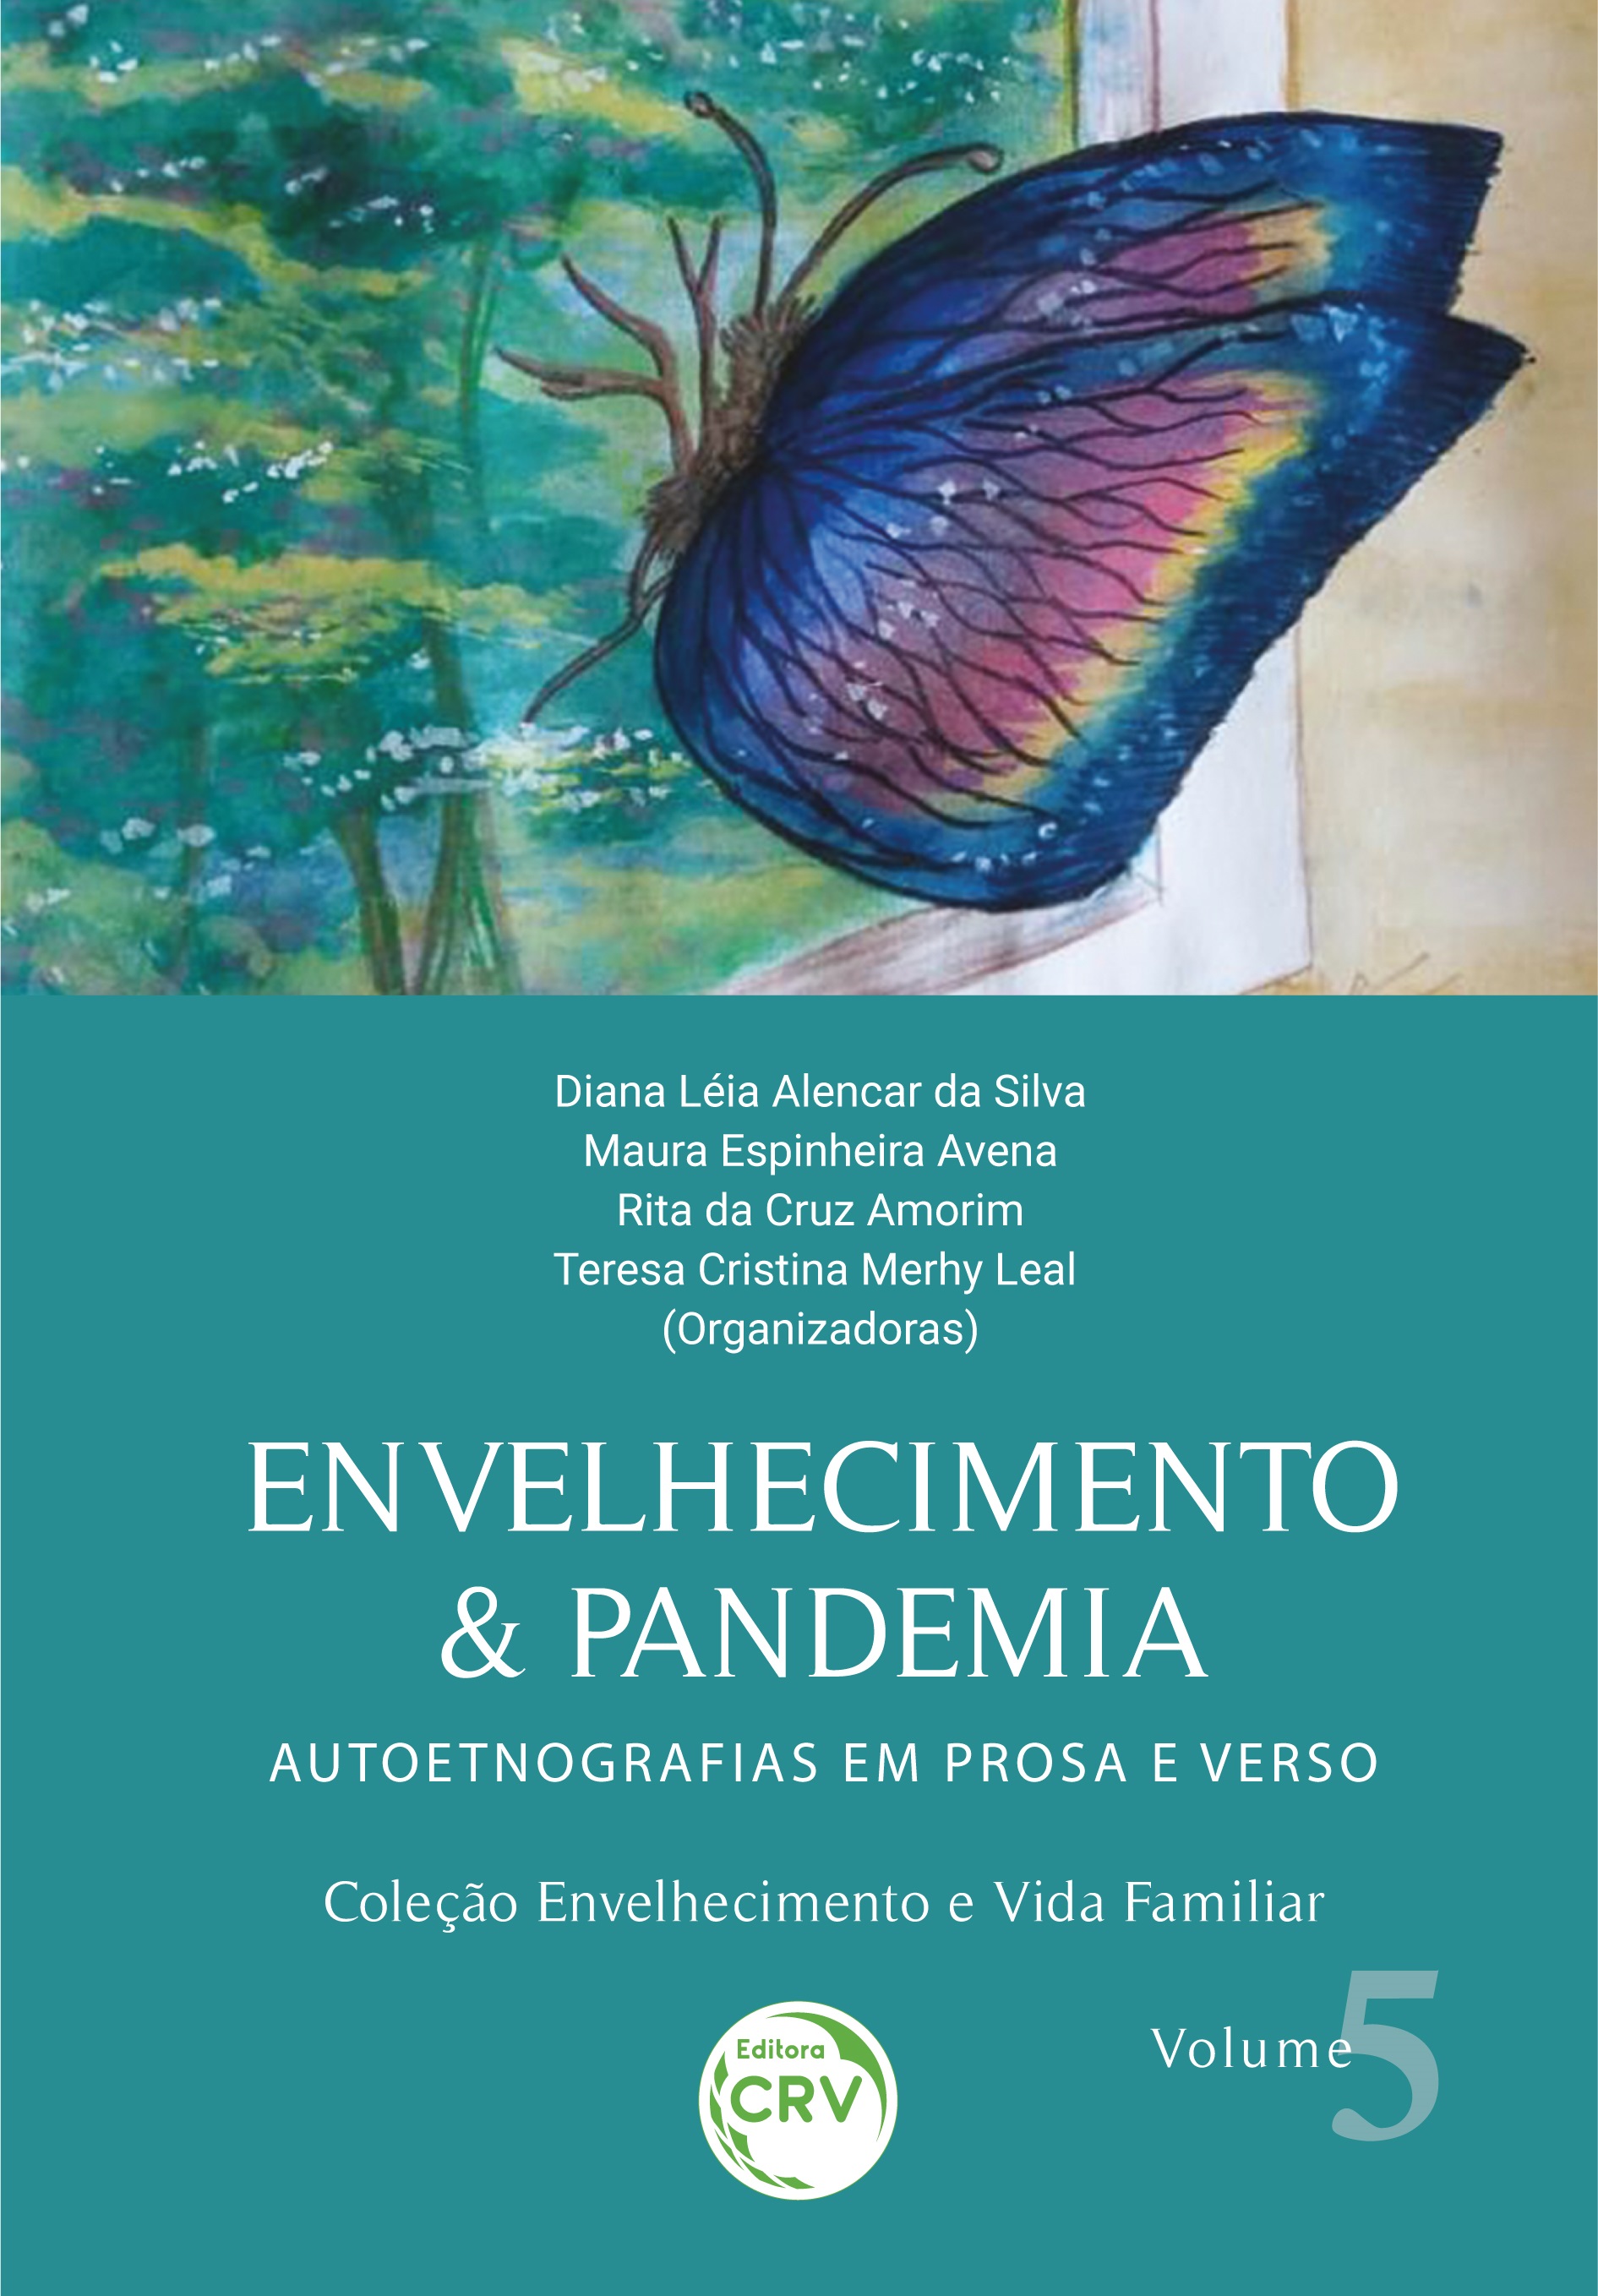 Capa do livro: ENVELHECIMENTO & PANDEMIA: <br>autoetnografias em prosa e verso <br>Coleção Envelhecimento e Vida Familiar<br> Volume 5